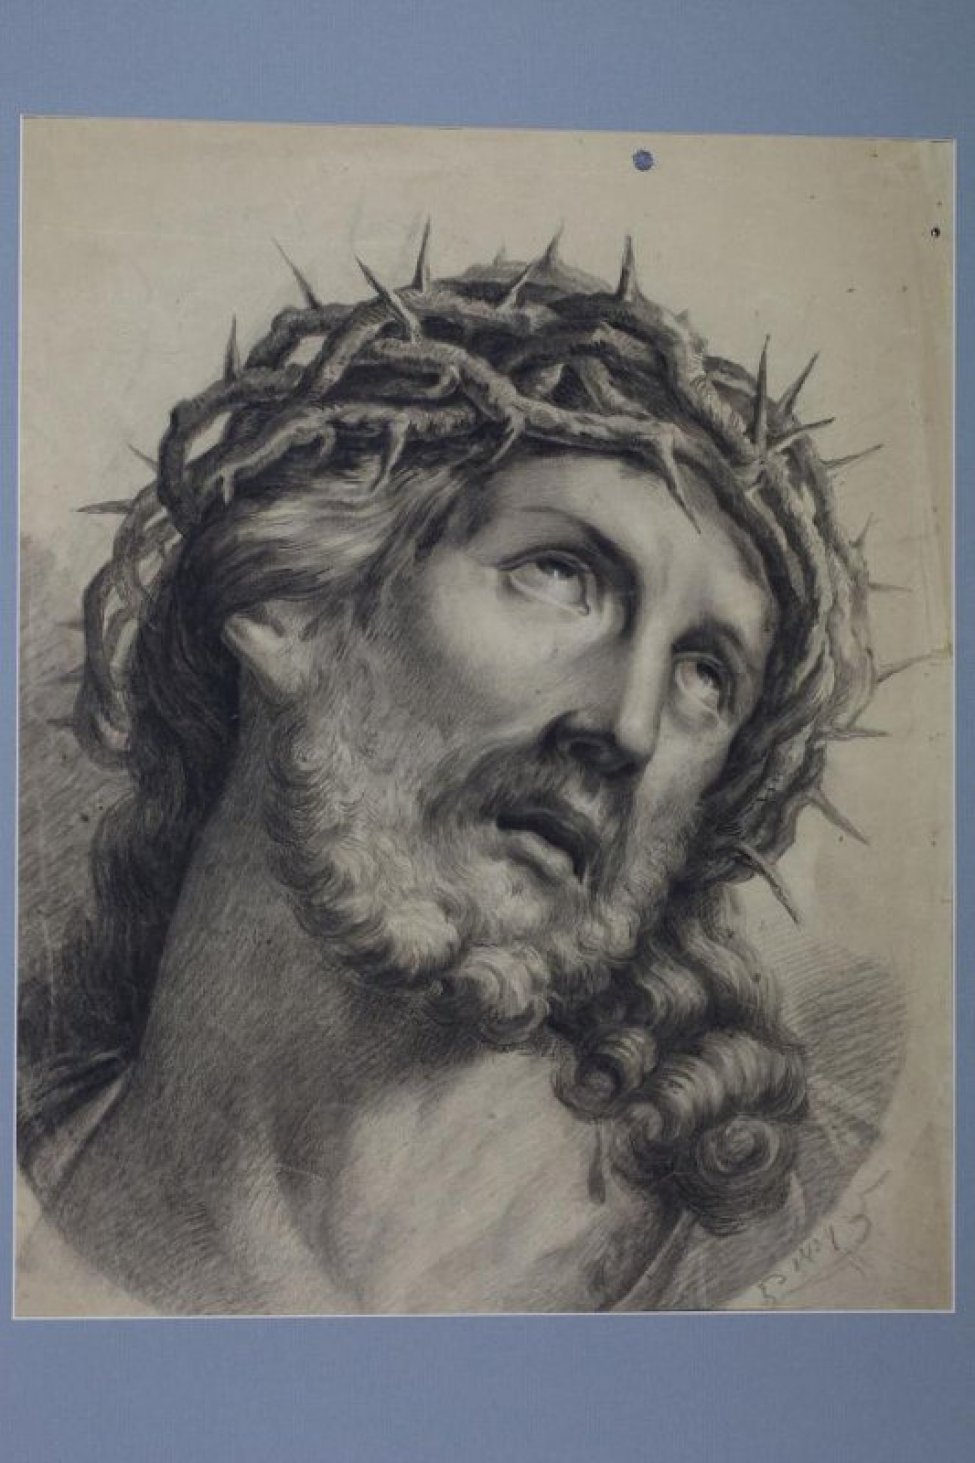 Оплечно  изображена голова Христа в терновом венце, наклоненная вправо.